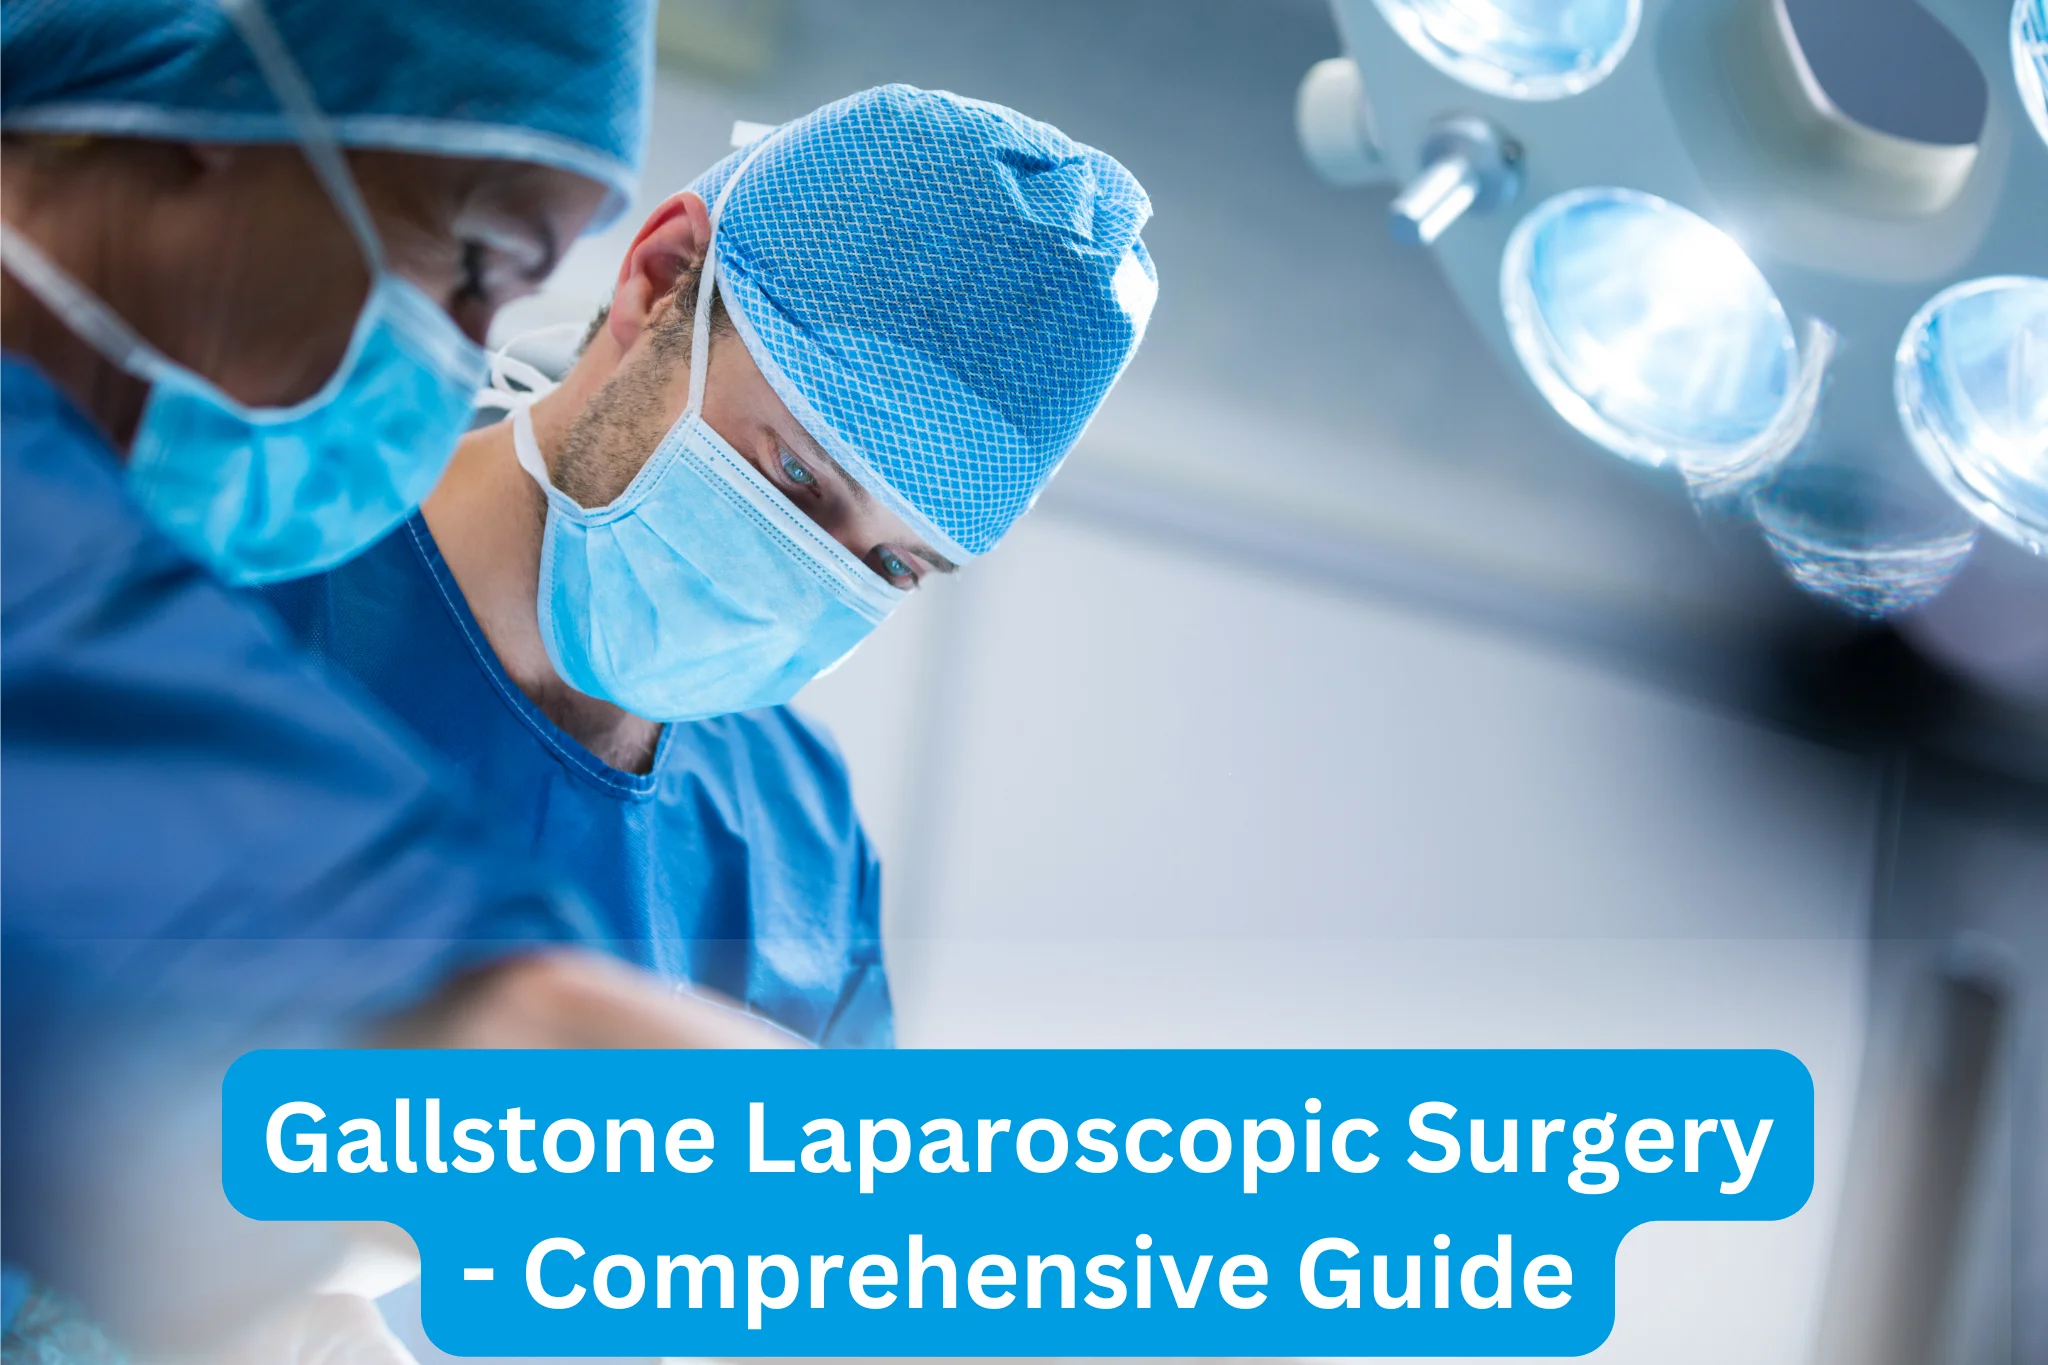 Gallstone Laparoscopic Surgery: Comprehensive Guide